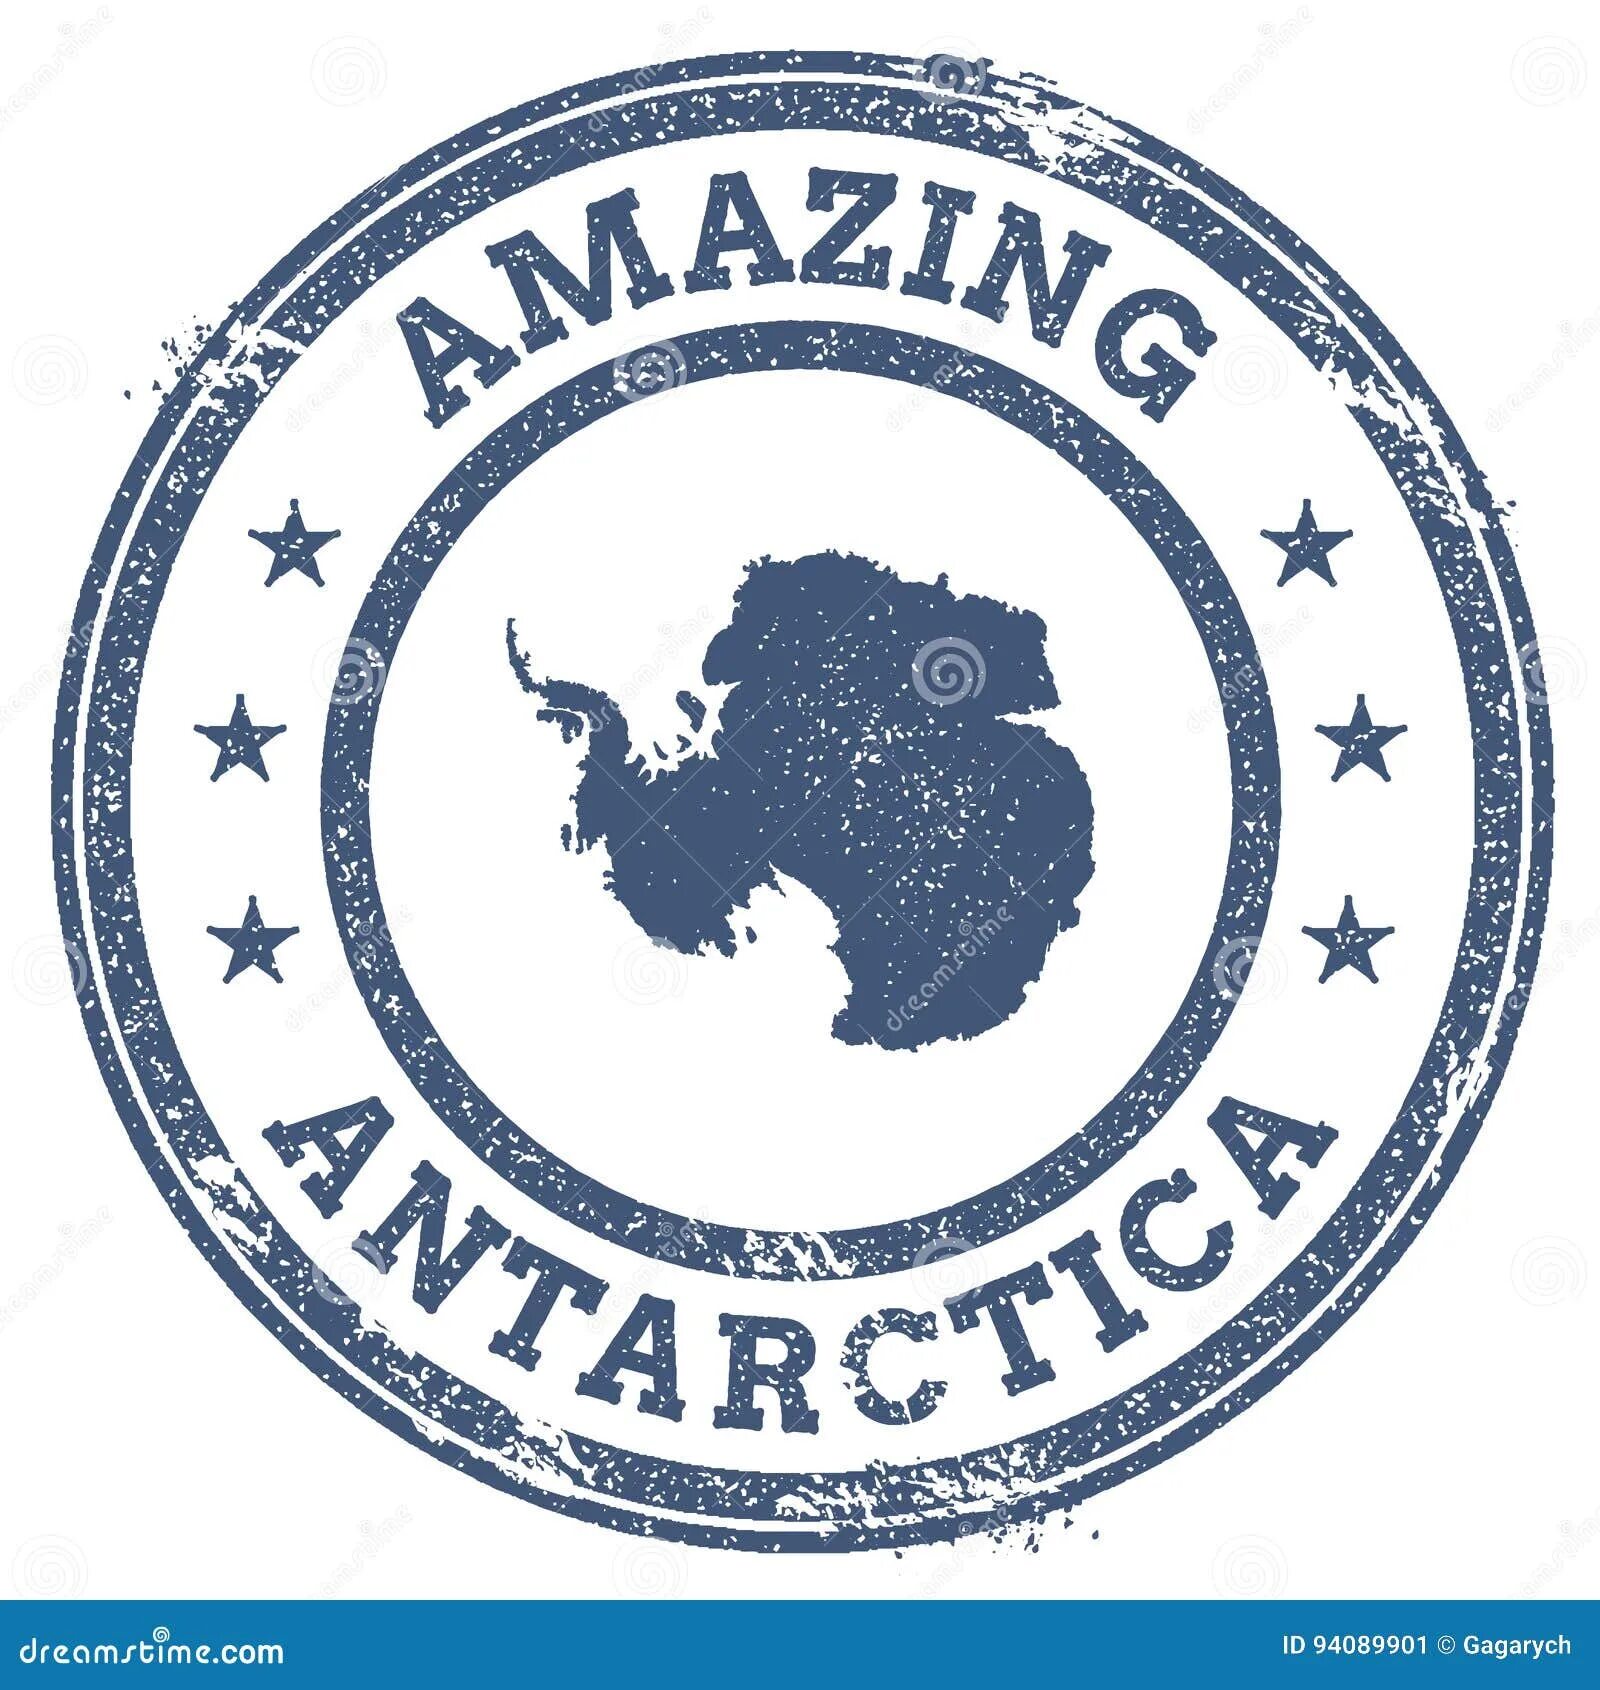 Логотип Антарктиды. Эмблема Арктики и Антарктики. Символ Антарктиды. Одежда с эмблемой Антарктиды.